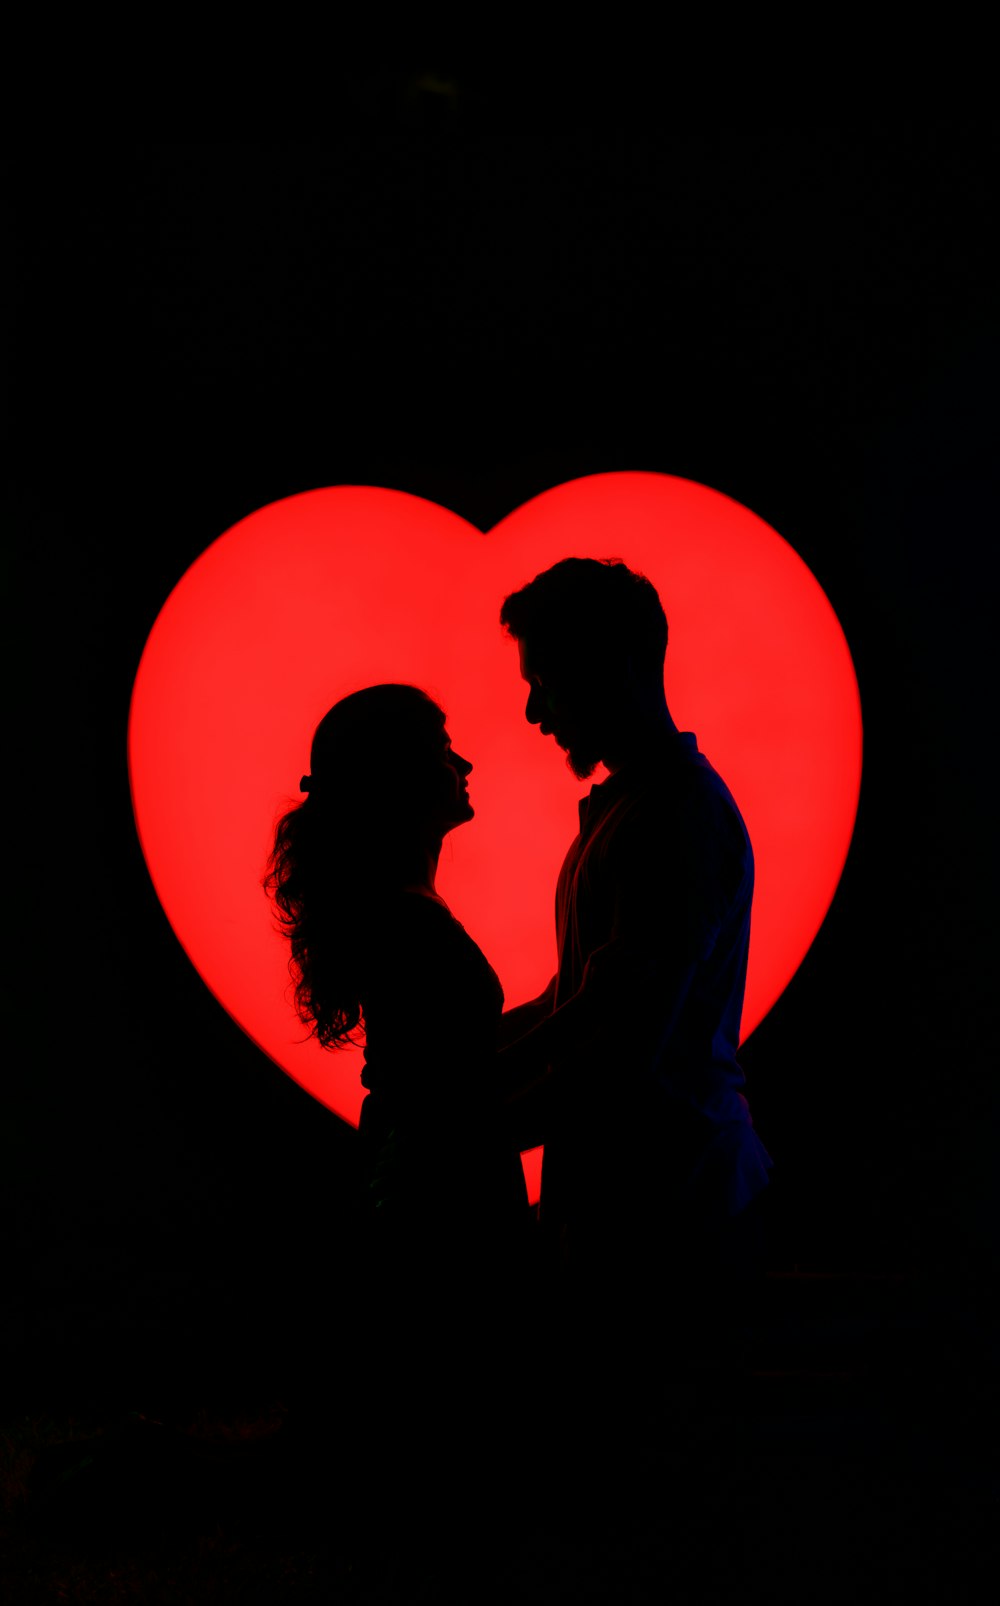 Ein Mann und eine Frau, die vor einem roten Herz stehen